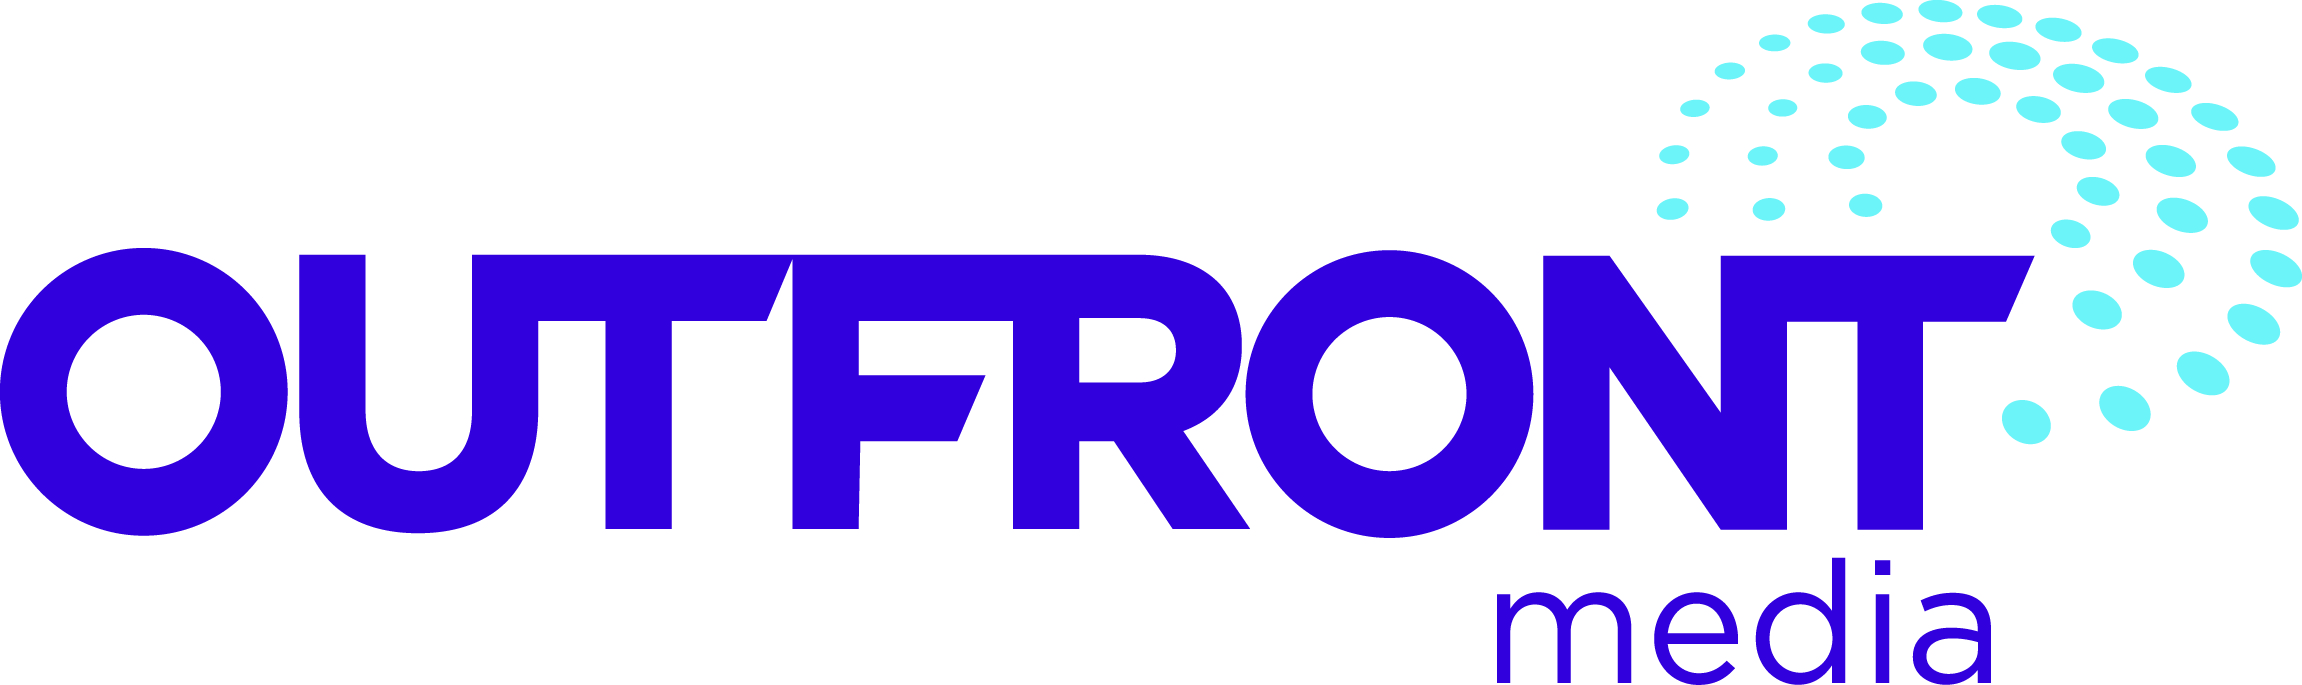 2015 RFR Sponsor - replaces CBS Outdoor logo